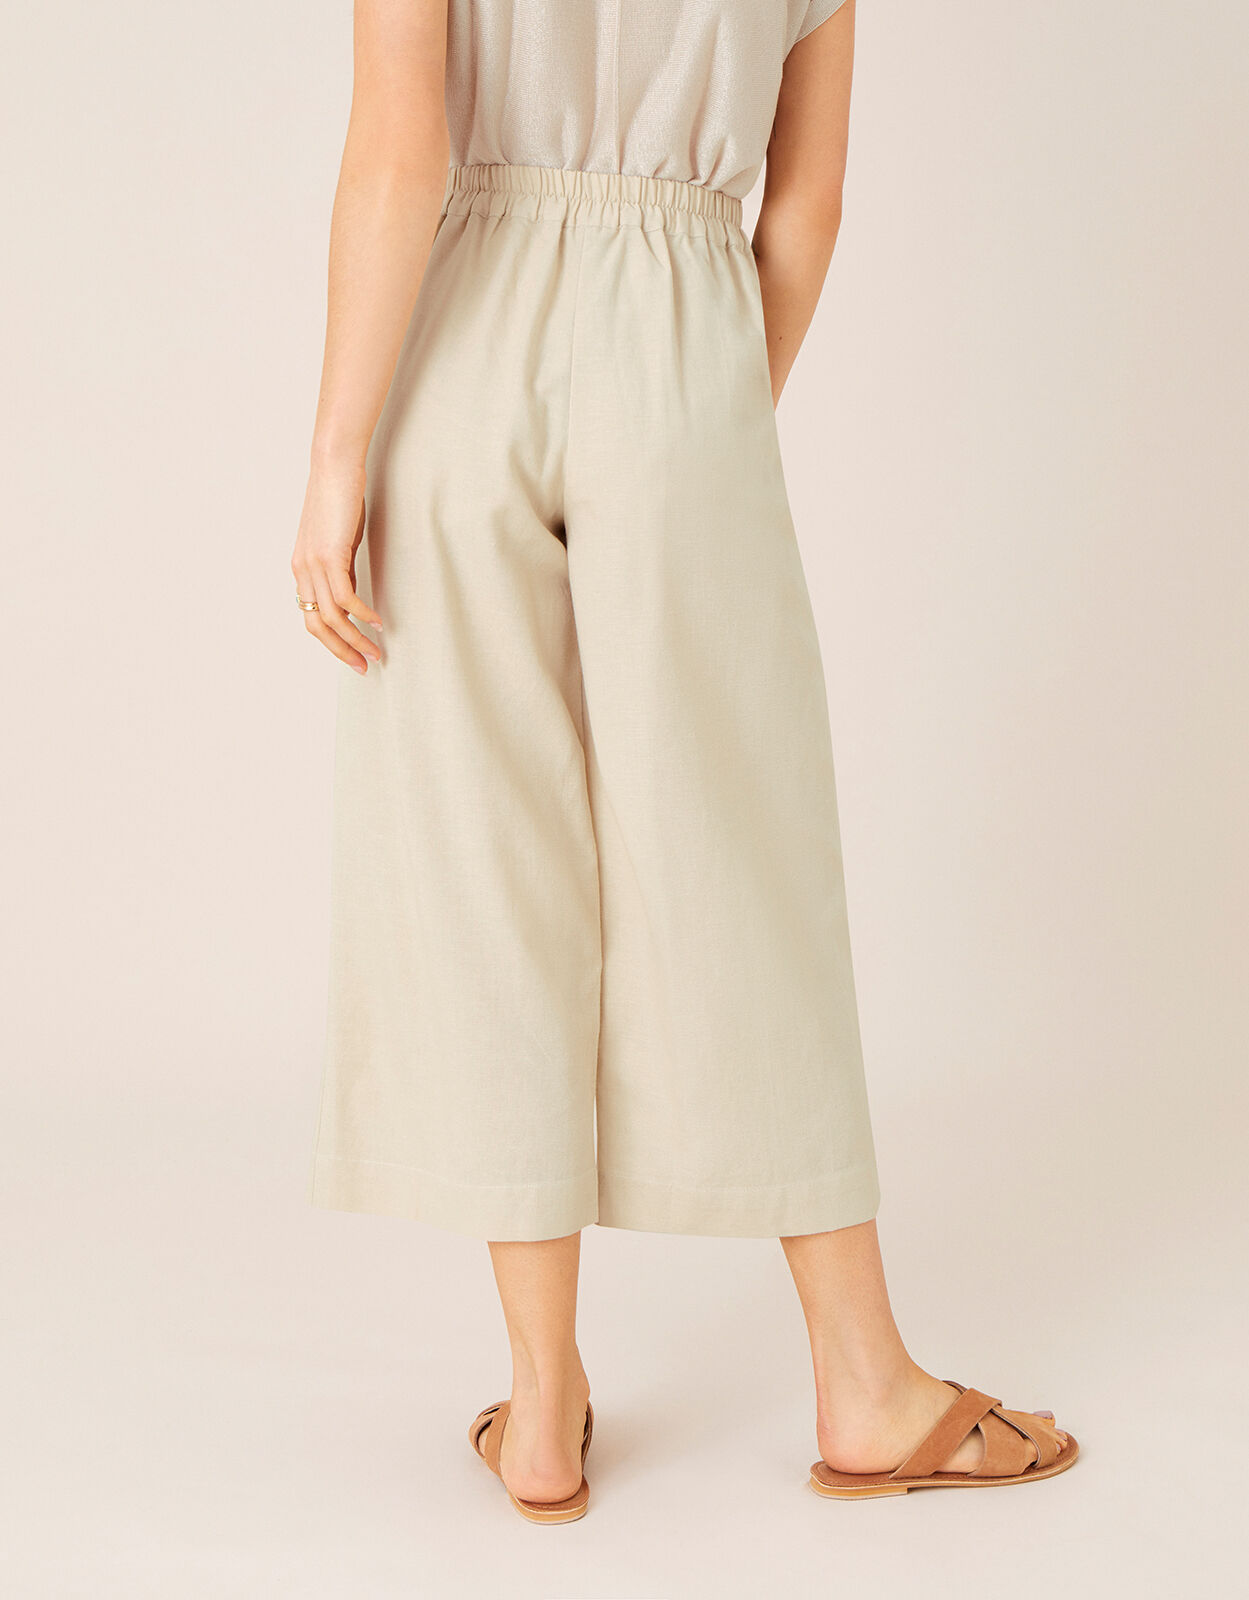 Linen-blend Crop Pants - Light beige - Ladies | H&M US